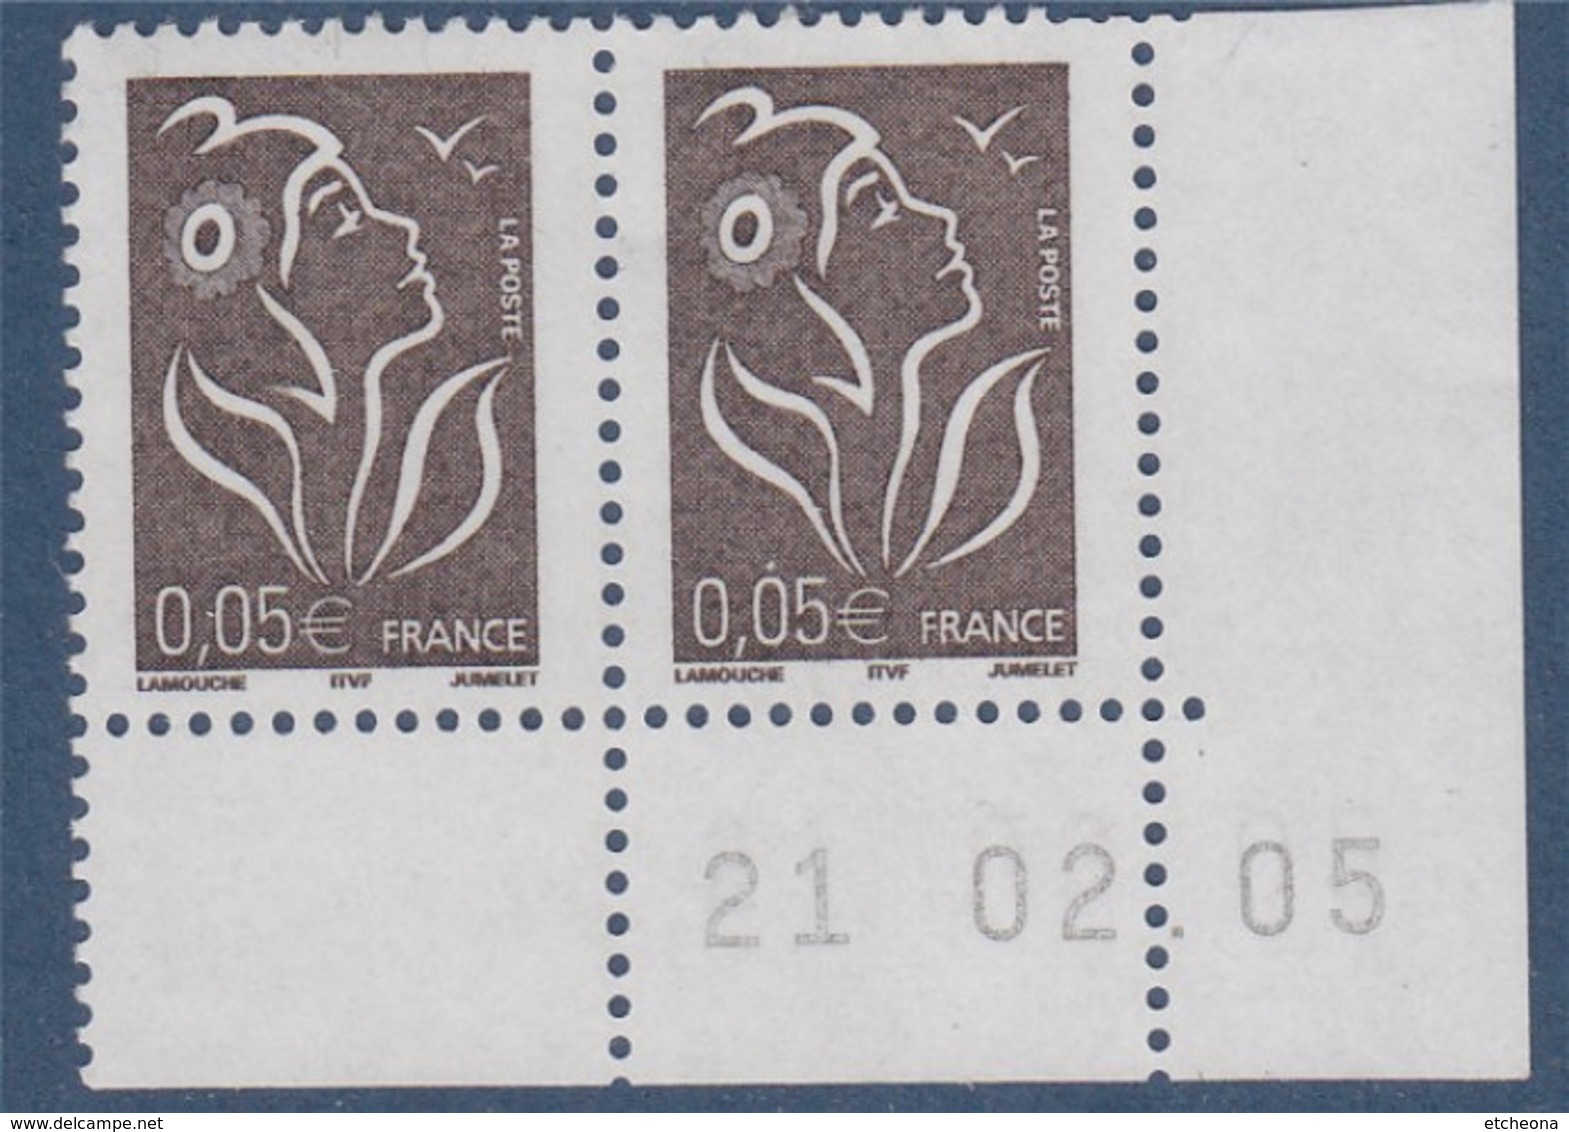 Lamouche 0.05€ Paire N°3754 Neuf En Coin De Feuille Daté 21.2.05 ITVF - 2004-2008 Marianne Van Lamouche